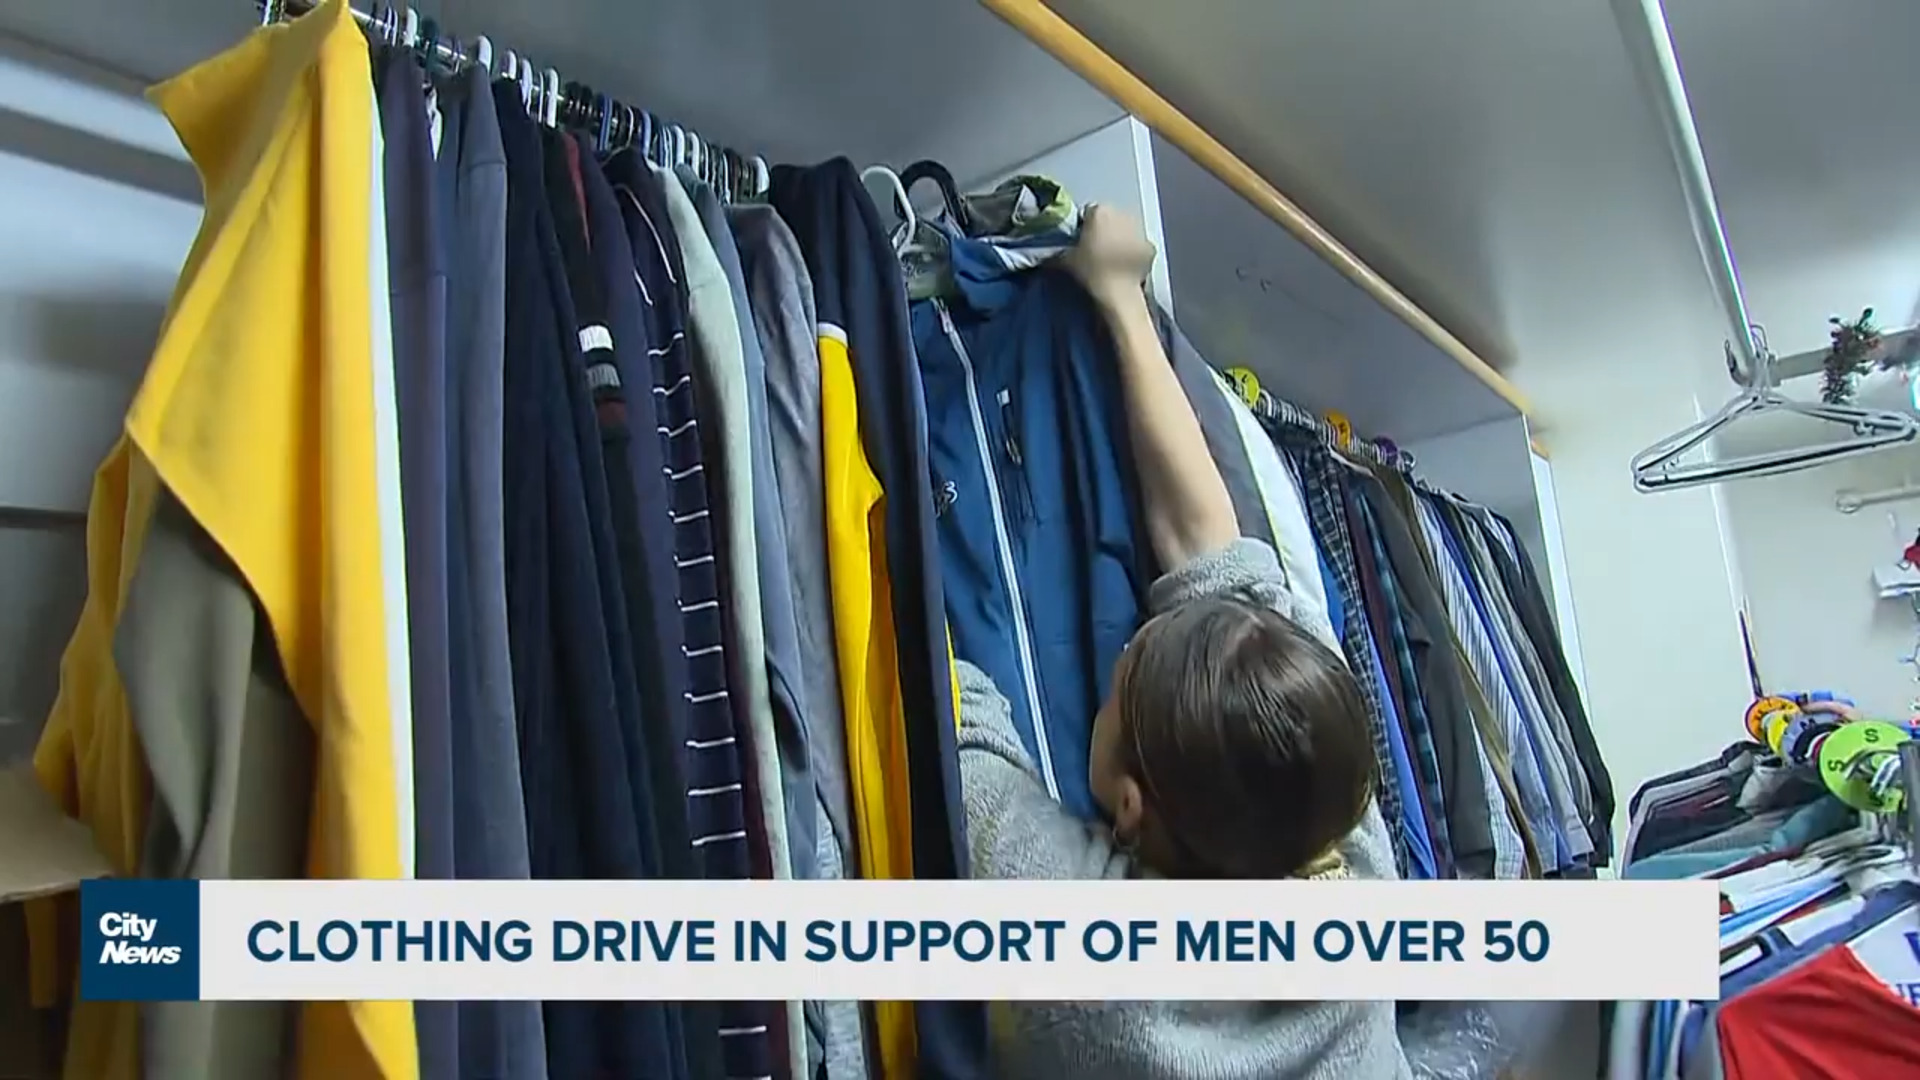 服装捐赠活动旨在支持50岁以上面临无家可归困境的男性